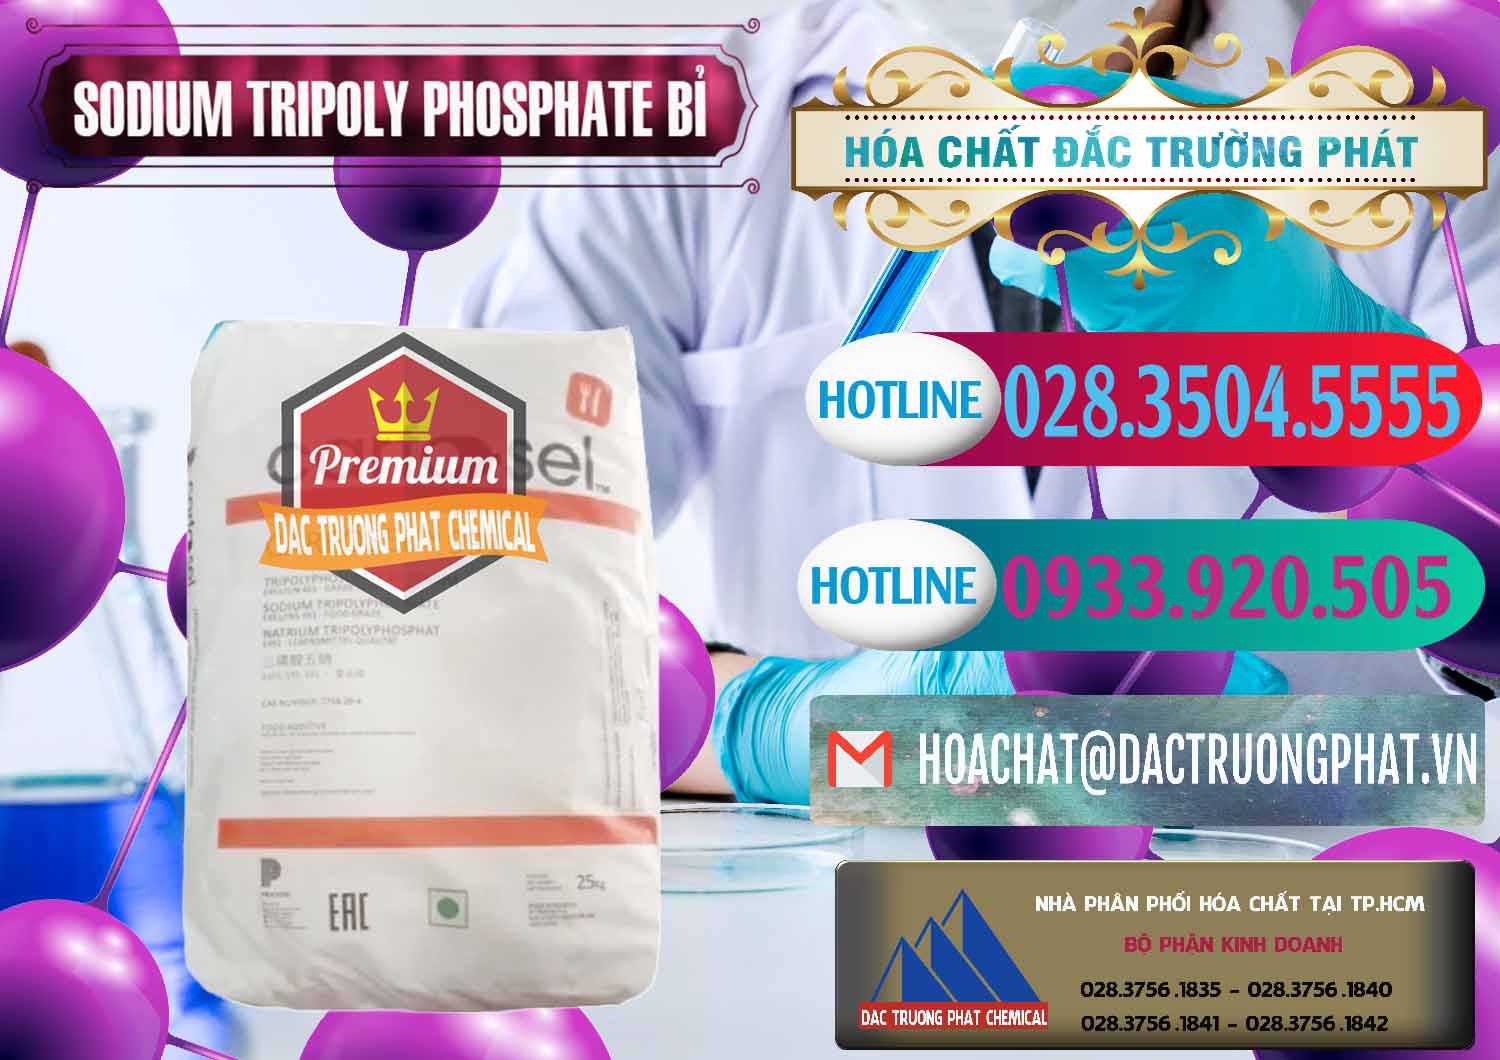 Cty chuyên bán _ phân phối Sodium Tripoly Phosphate - STPP Carfosel 991 Bỉ Belgium - 0429 - Nhà phân phối - cung ứng hóa chất tại TP.HCM - truongphat.vn